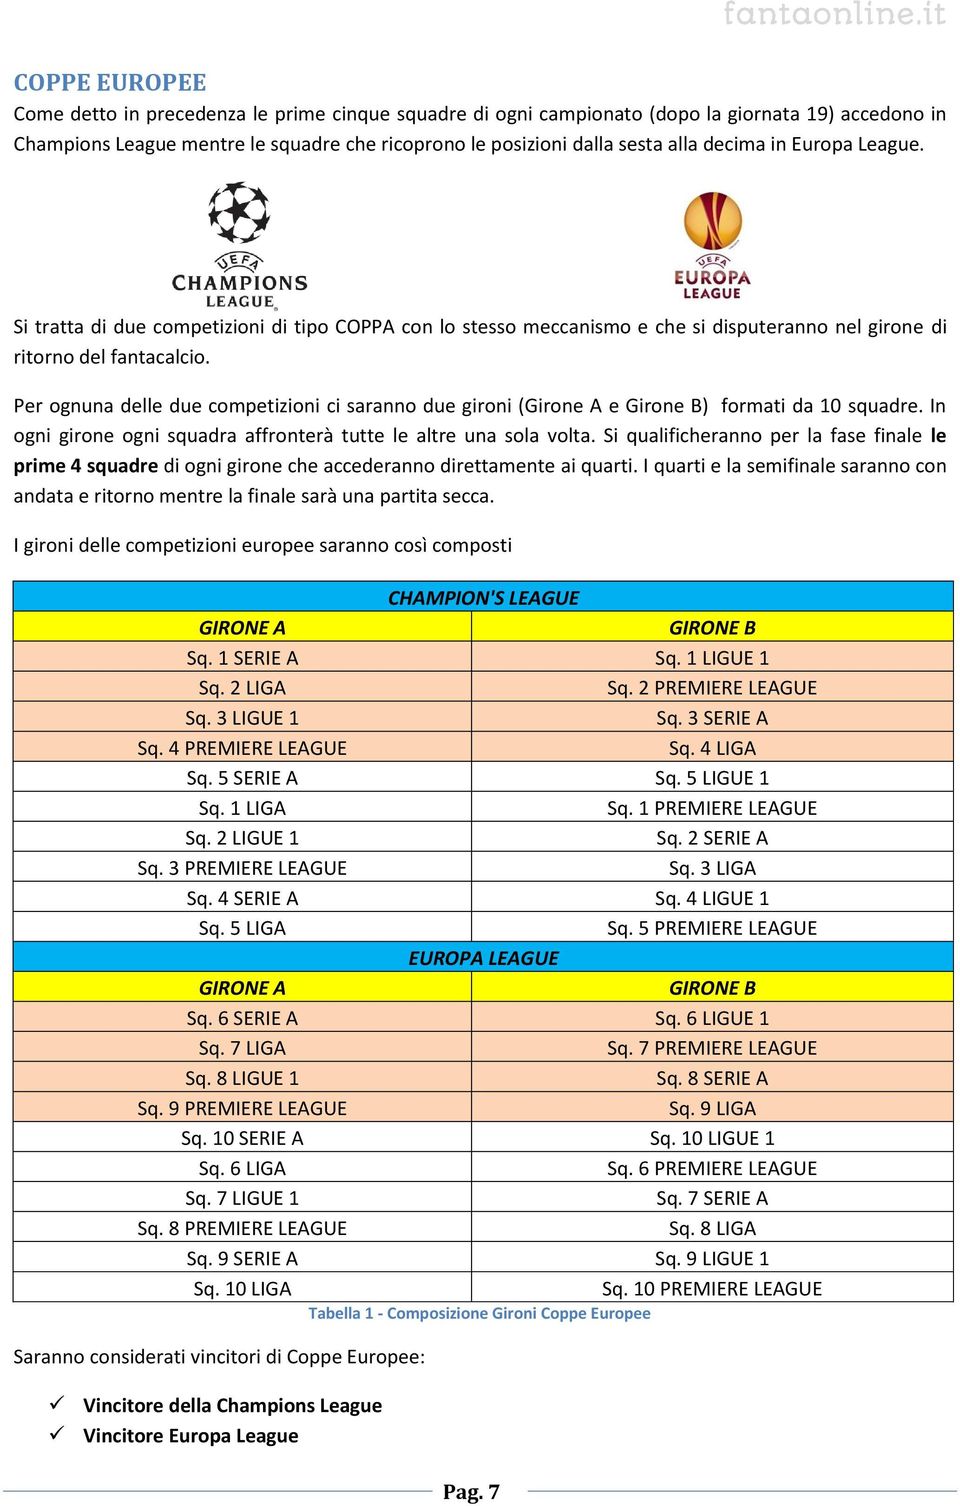 Per ognuna delle due competizioni ci saranno due gironi (Girone A e Girone B) formati da 10 squadre. In ogni girone ogni squadra affronterà tutte le altre una sola volta.